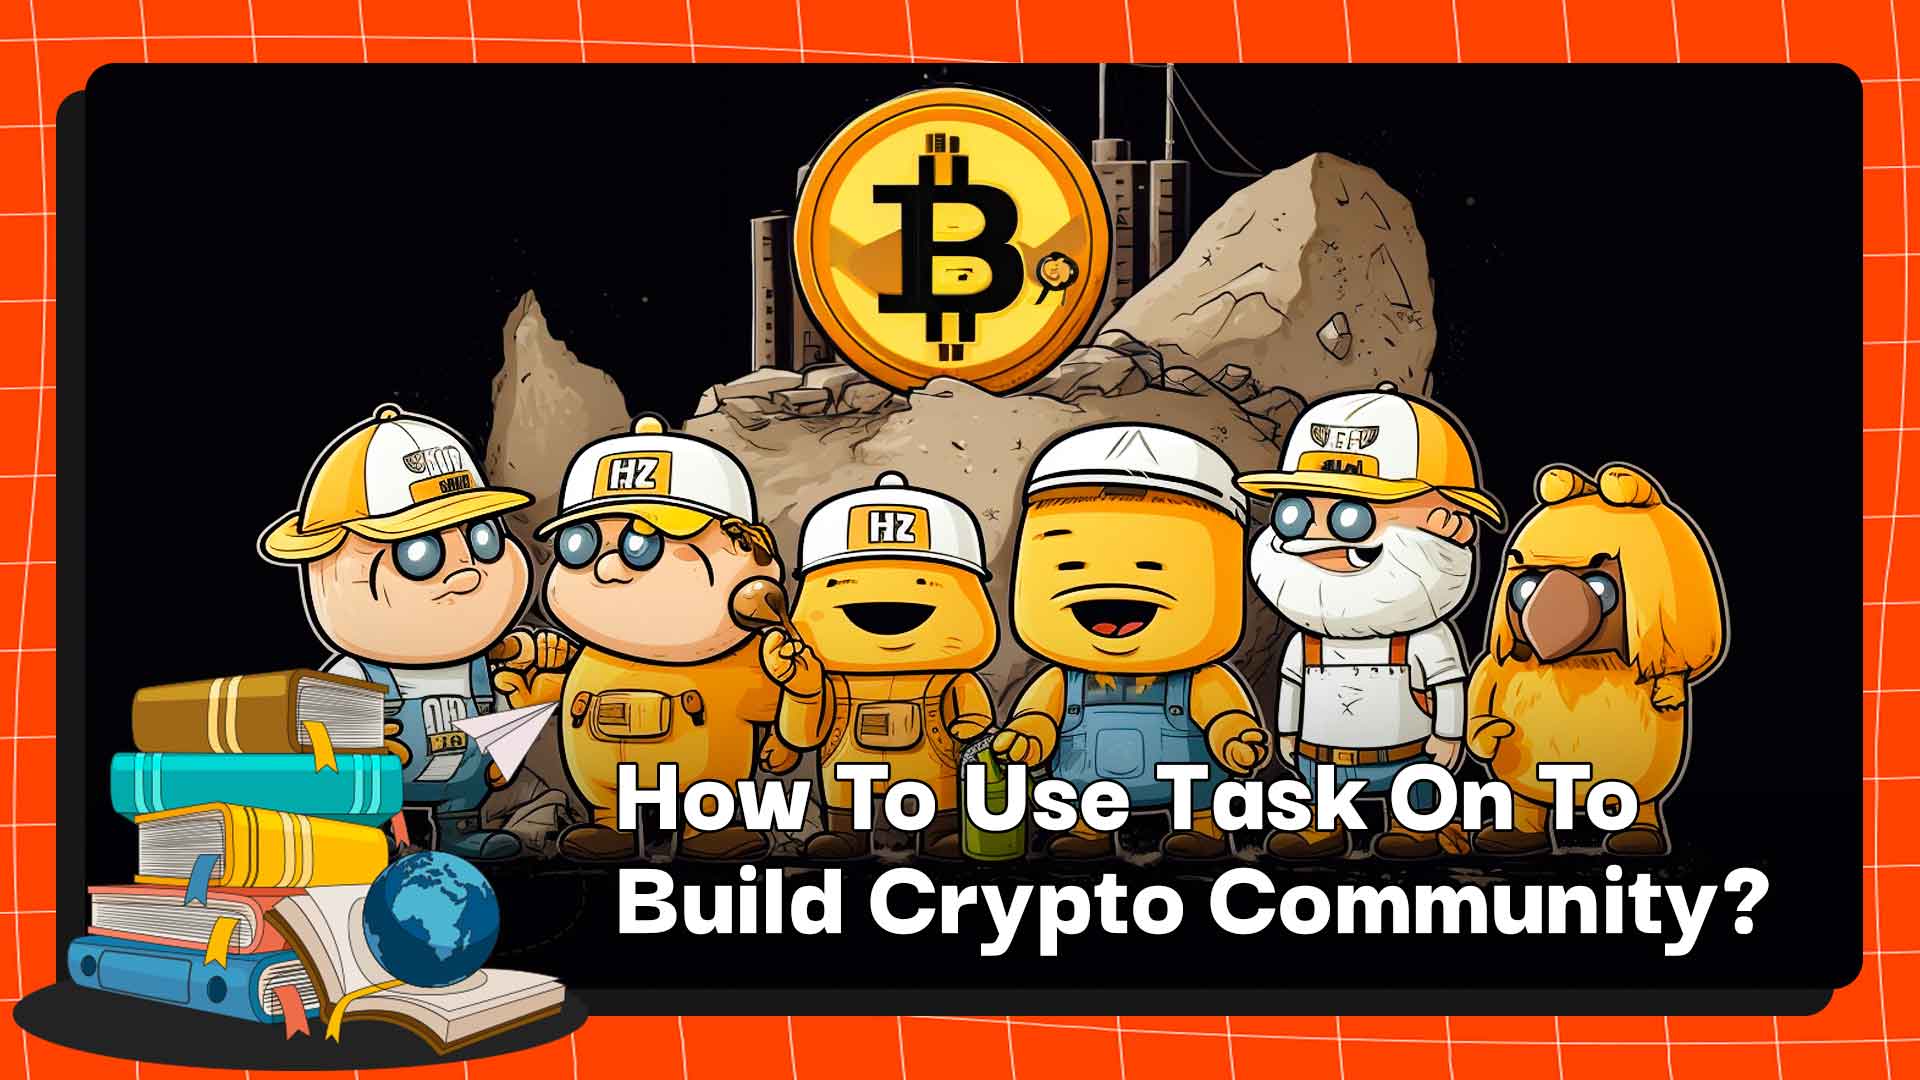 Kripto Topluluğu Oluşturmak İçin TaskOn Nasıl Kullanılır?